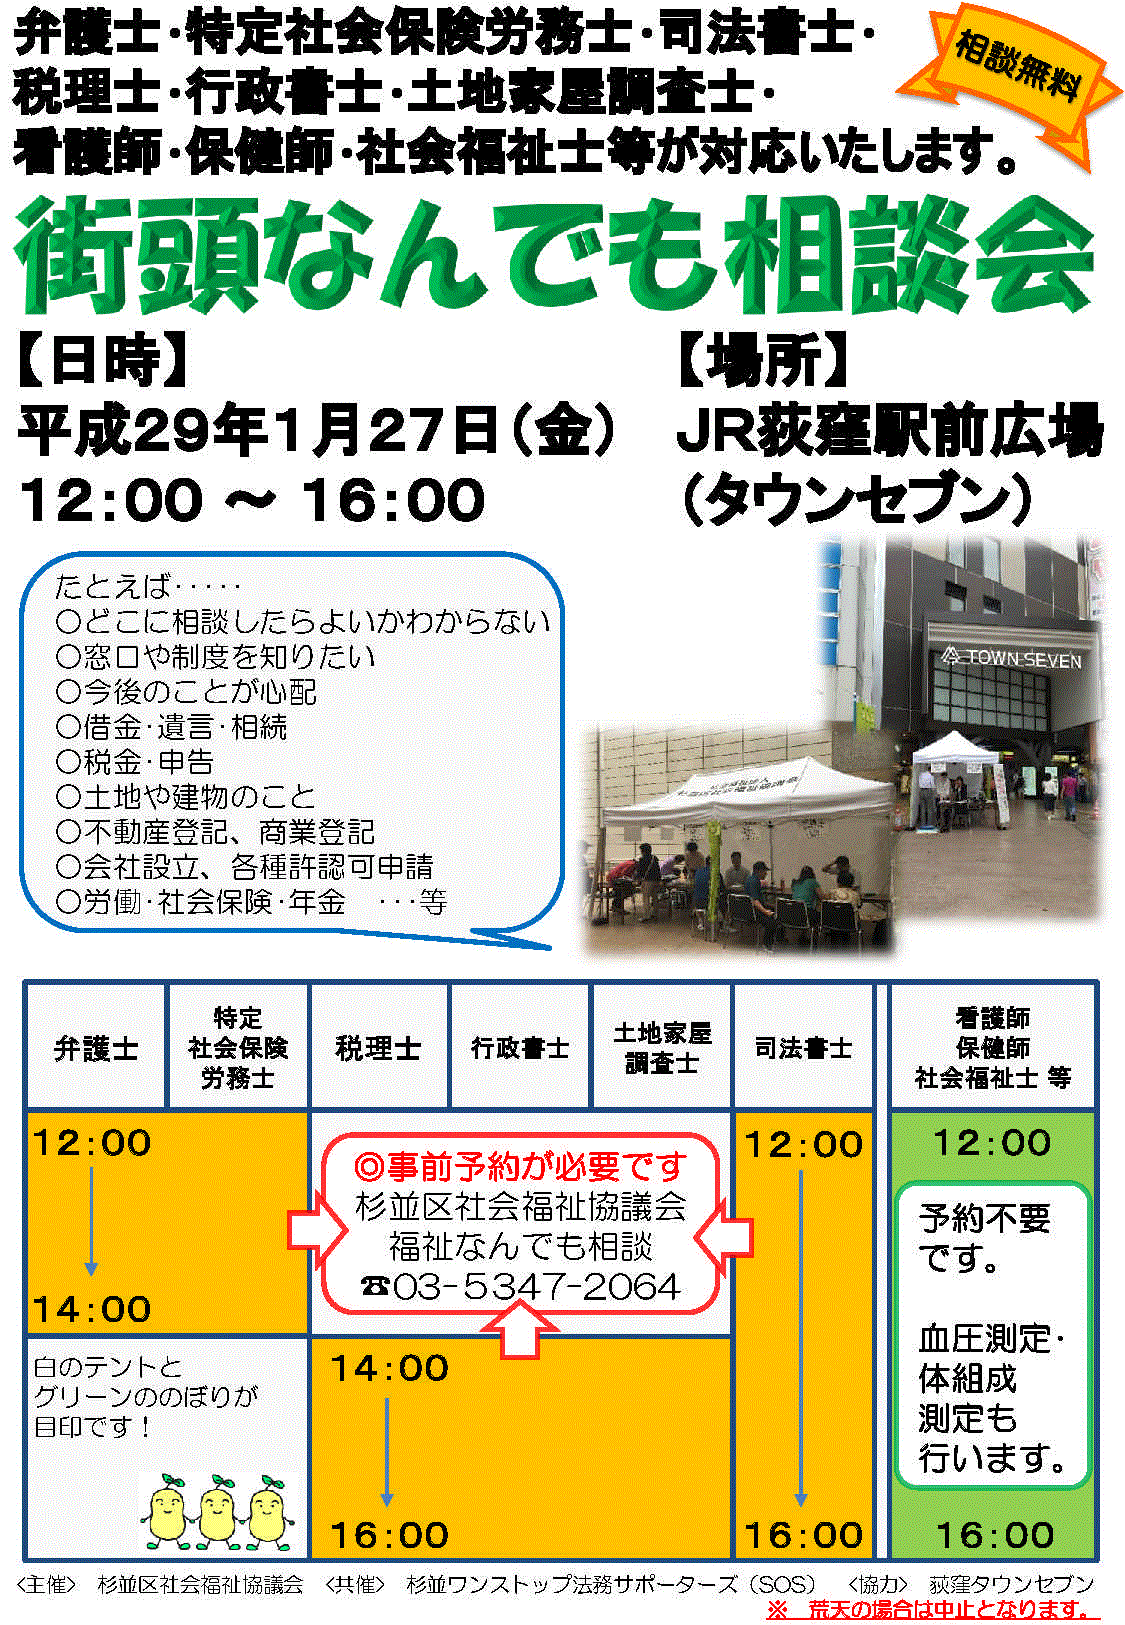 1月29日JR荻窪駅北口広場の「街角なんでも相談会」に参加します。_f0005428_18062032.gif